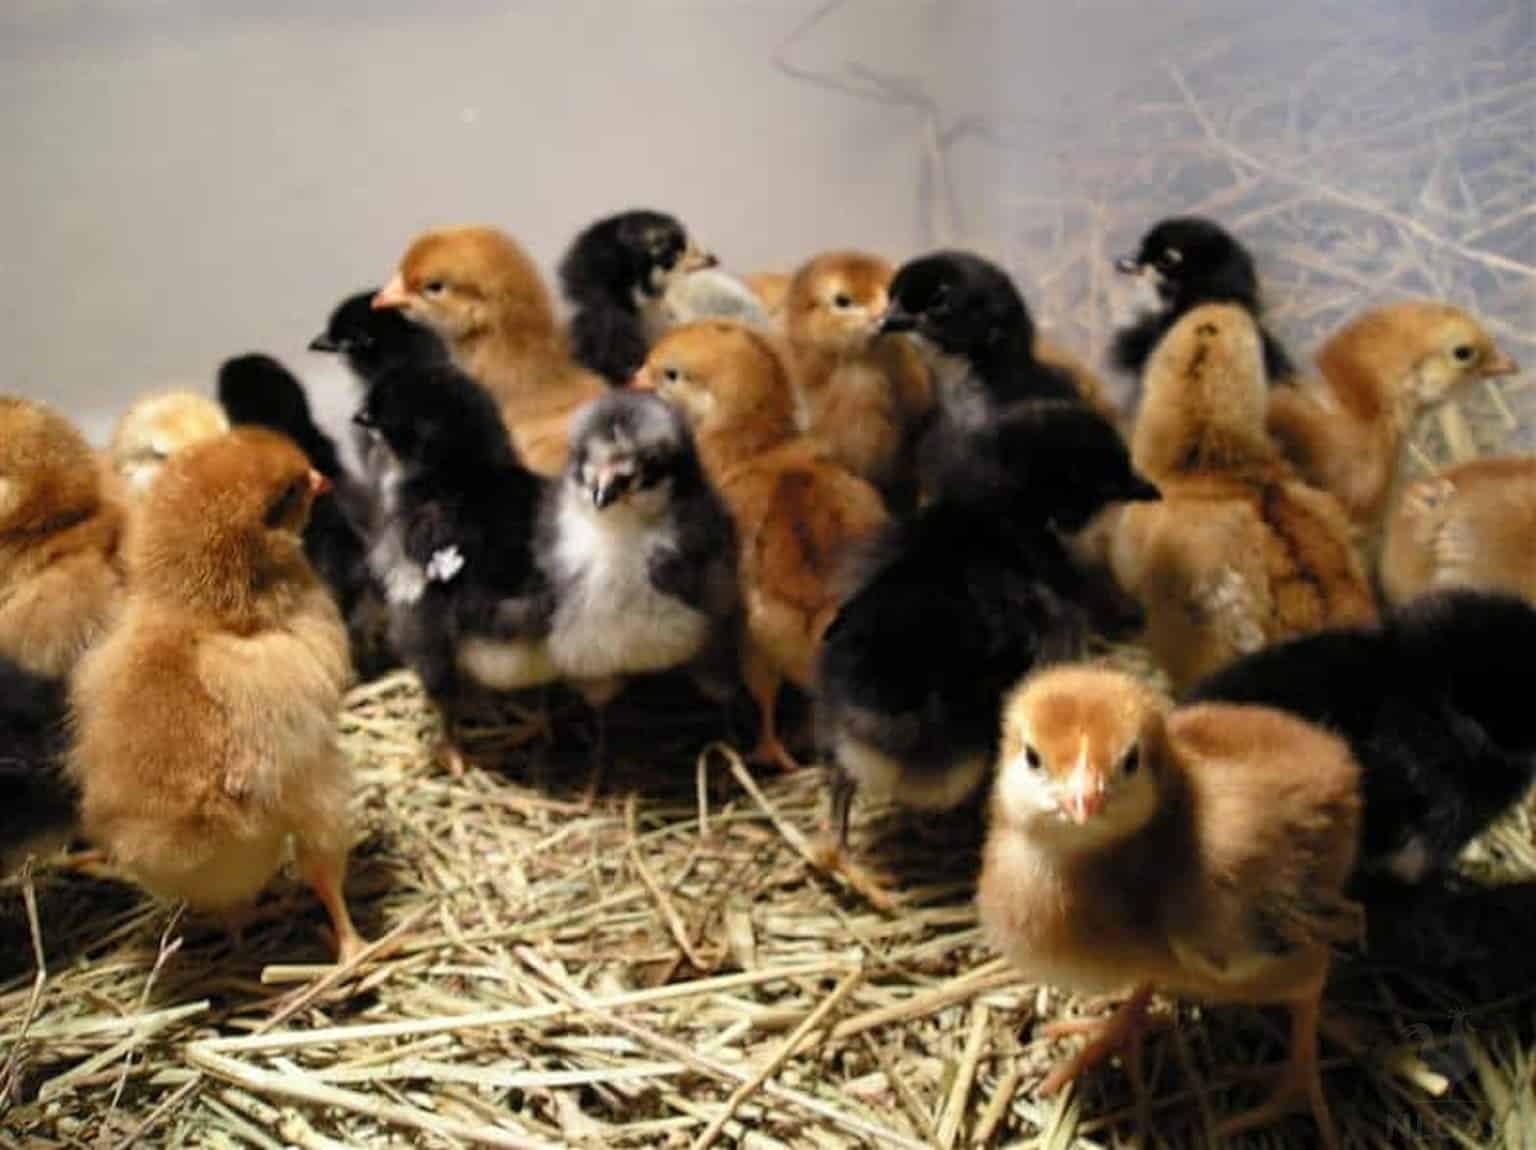 baby chicks on straw bedding in brooder